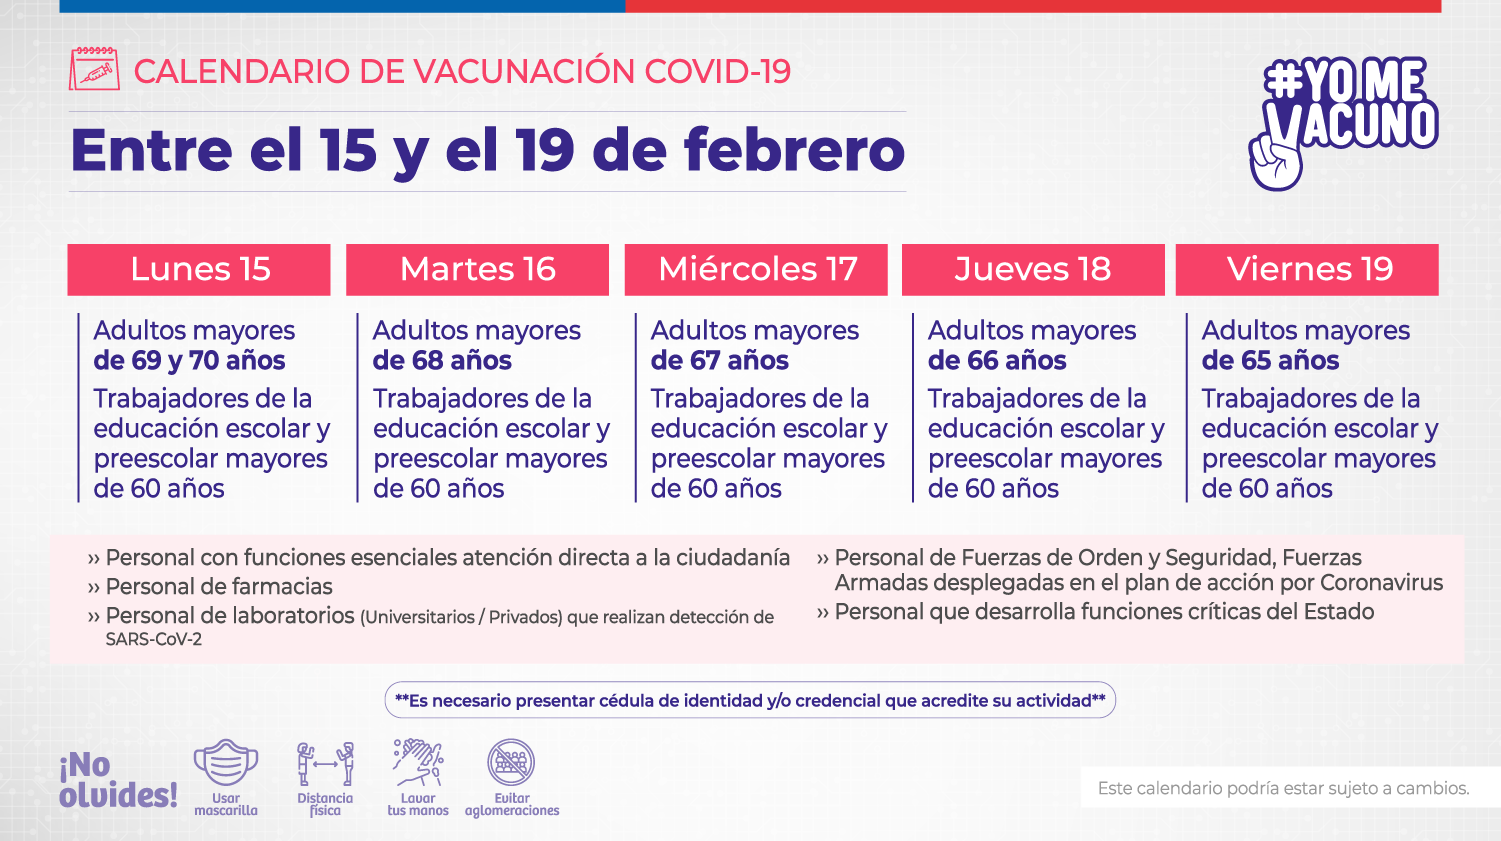 redes-sociales_vacunacion-covid-semana-3_tw-copia.png